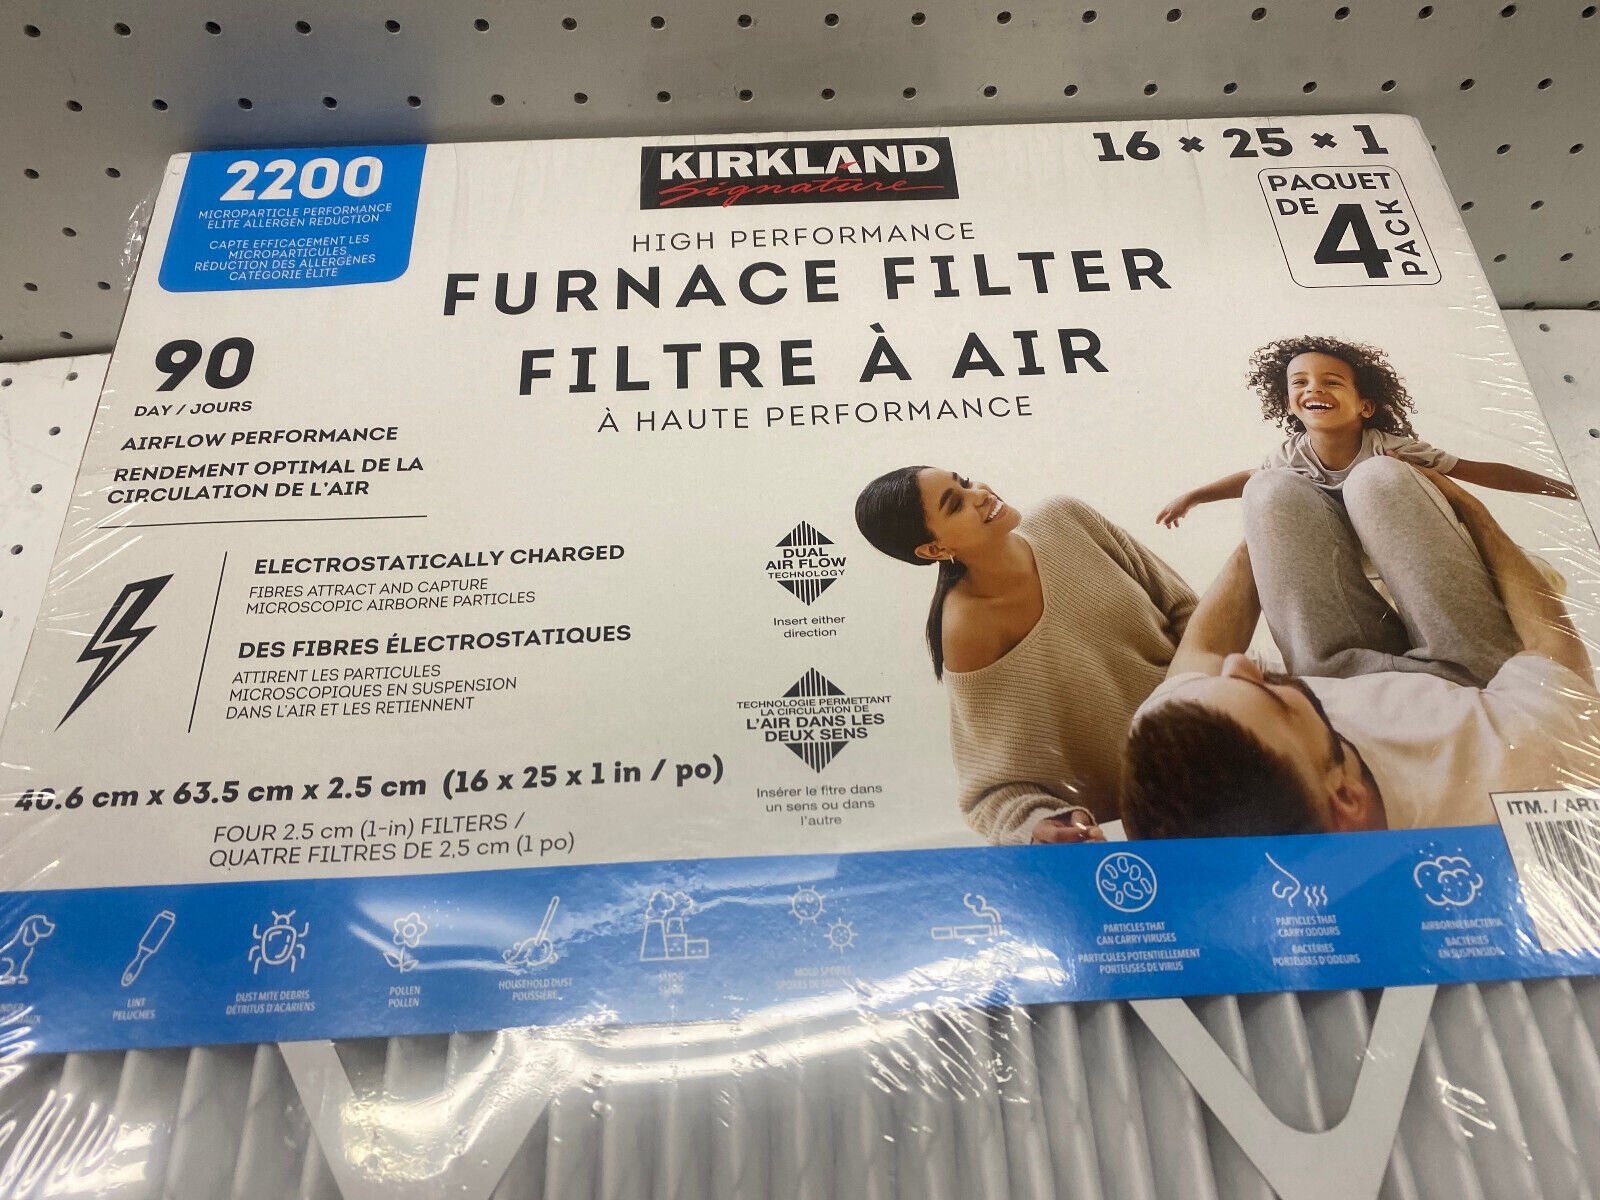 Kirkland 3M High Performance Air Furnace Filter 4 Pack 16X25X1